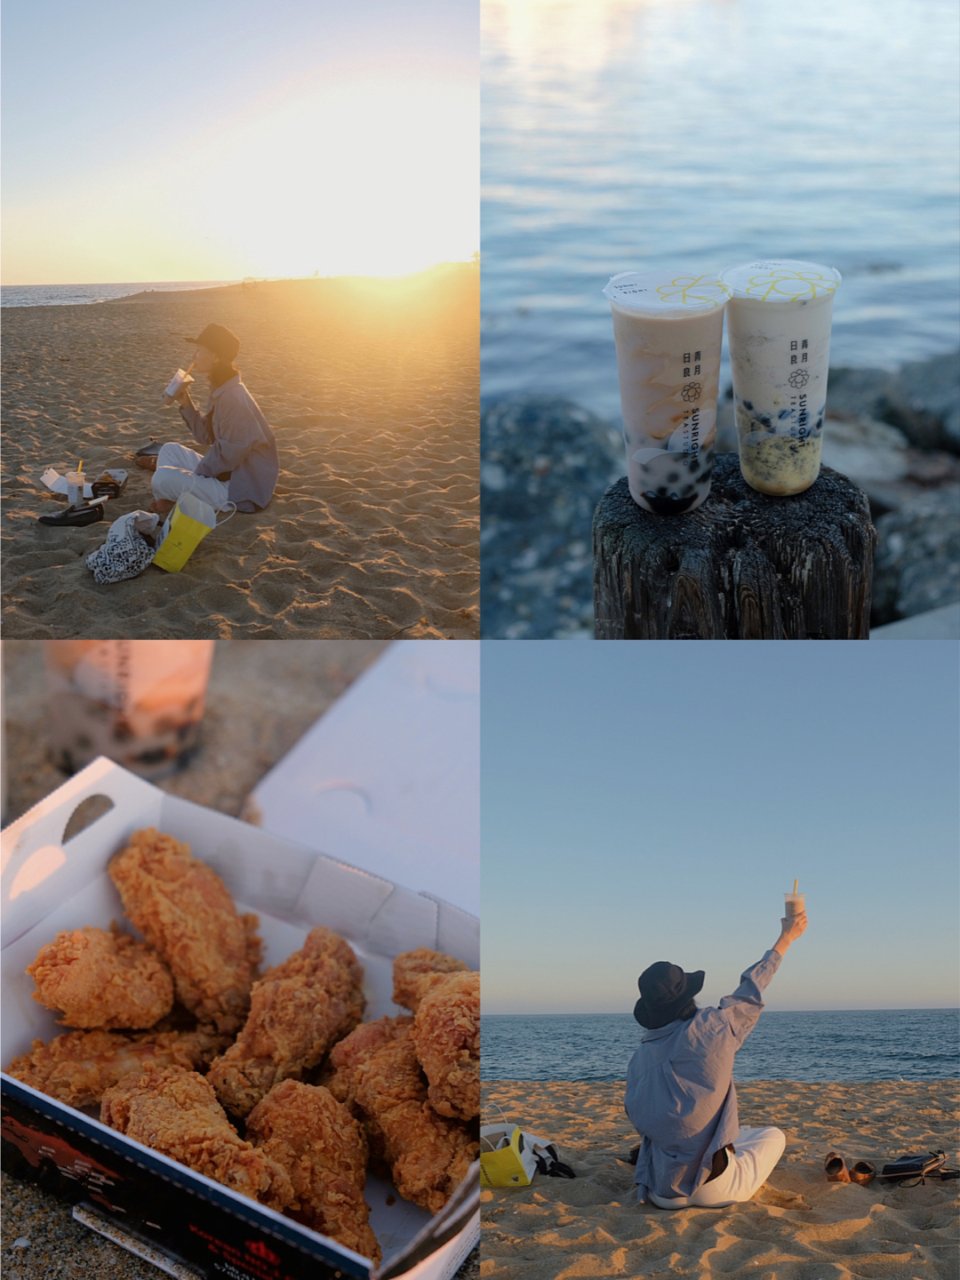 奶茶，炸鸡，海边的夕阳，和久未见的朋友...